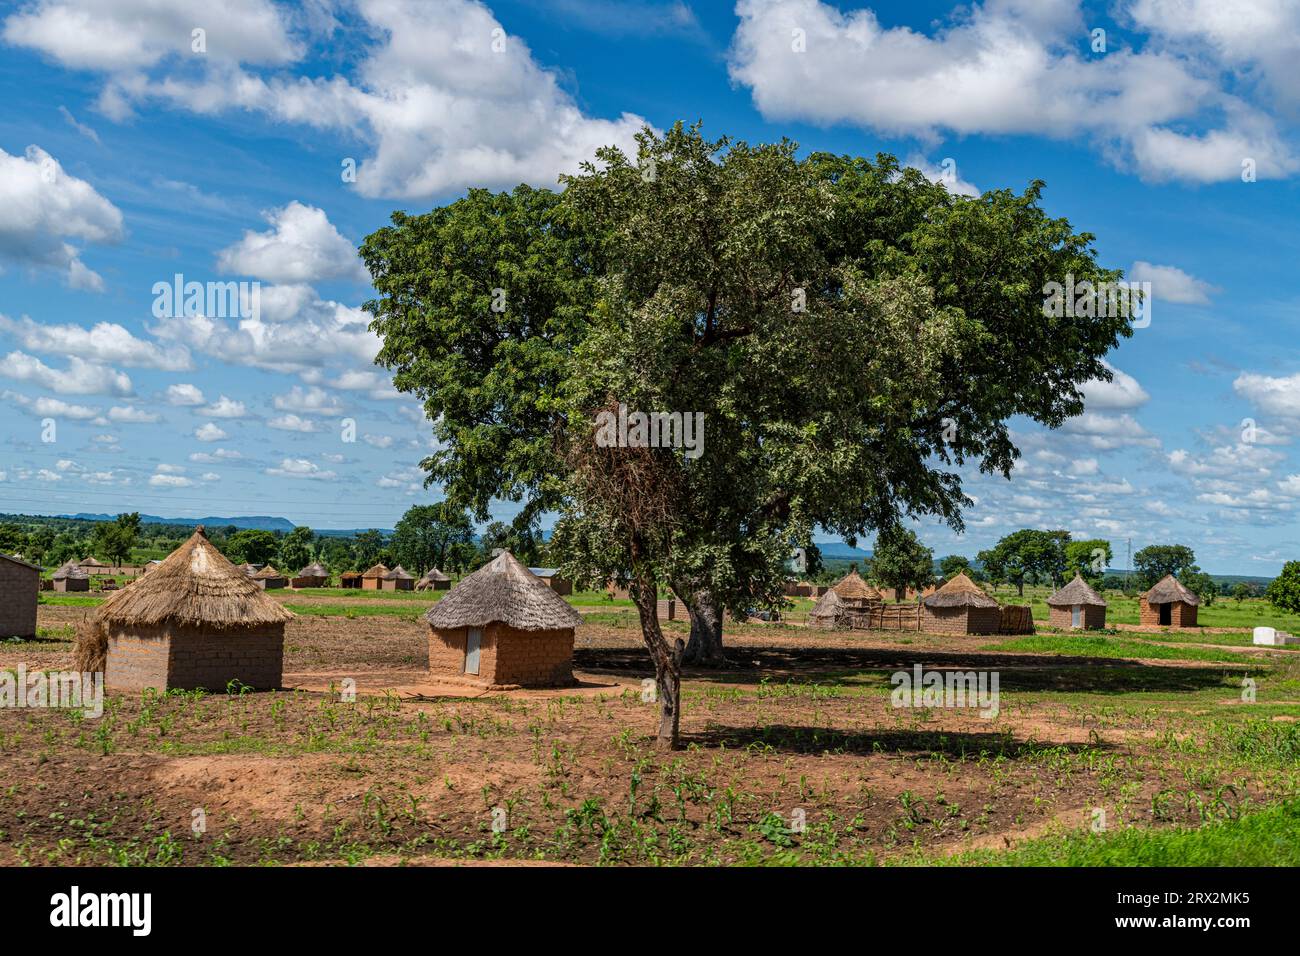 Cabanes de boue traditionnelles, Nord Cameroun, Afrique Banque D'Images